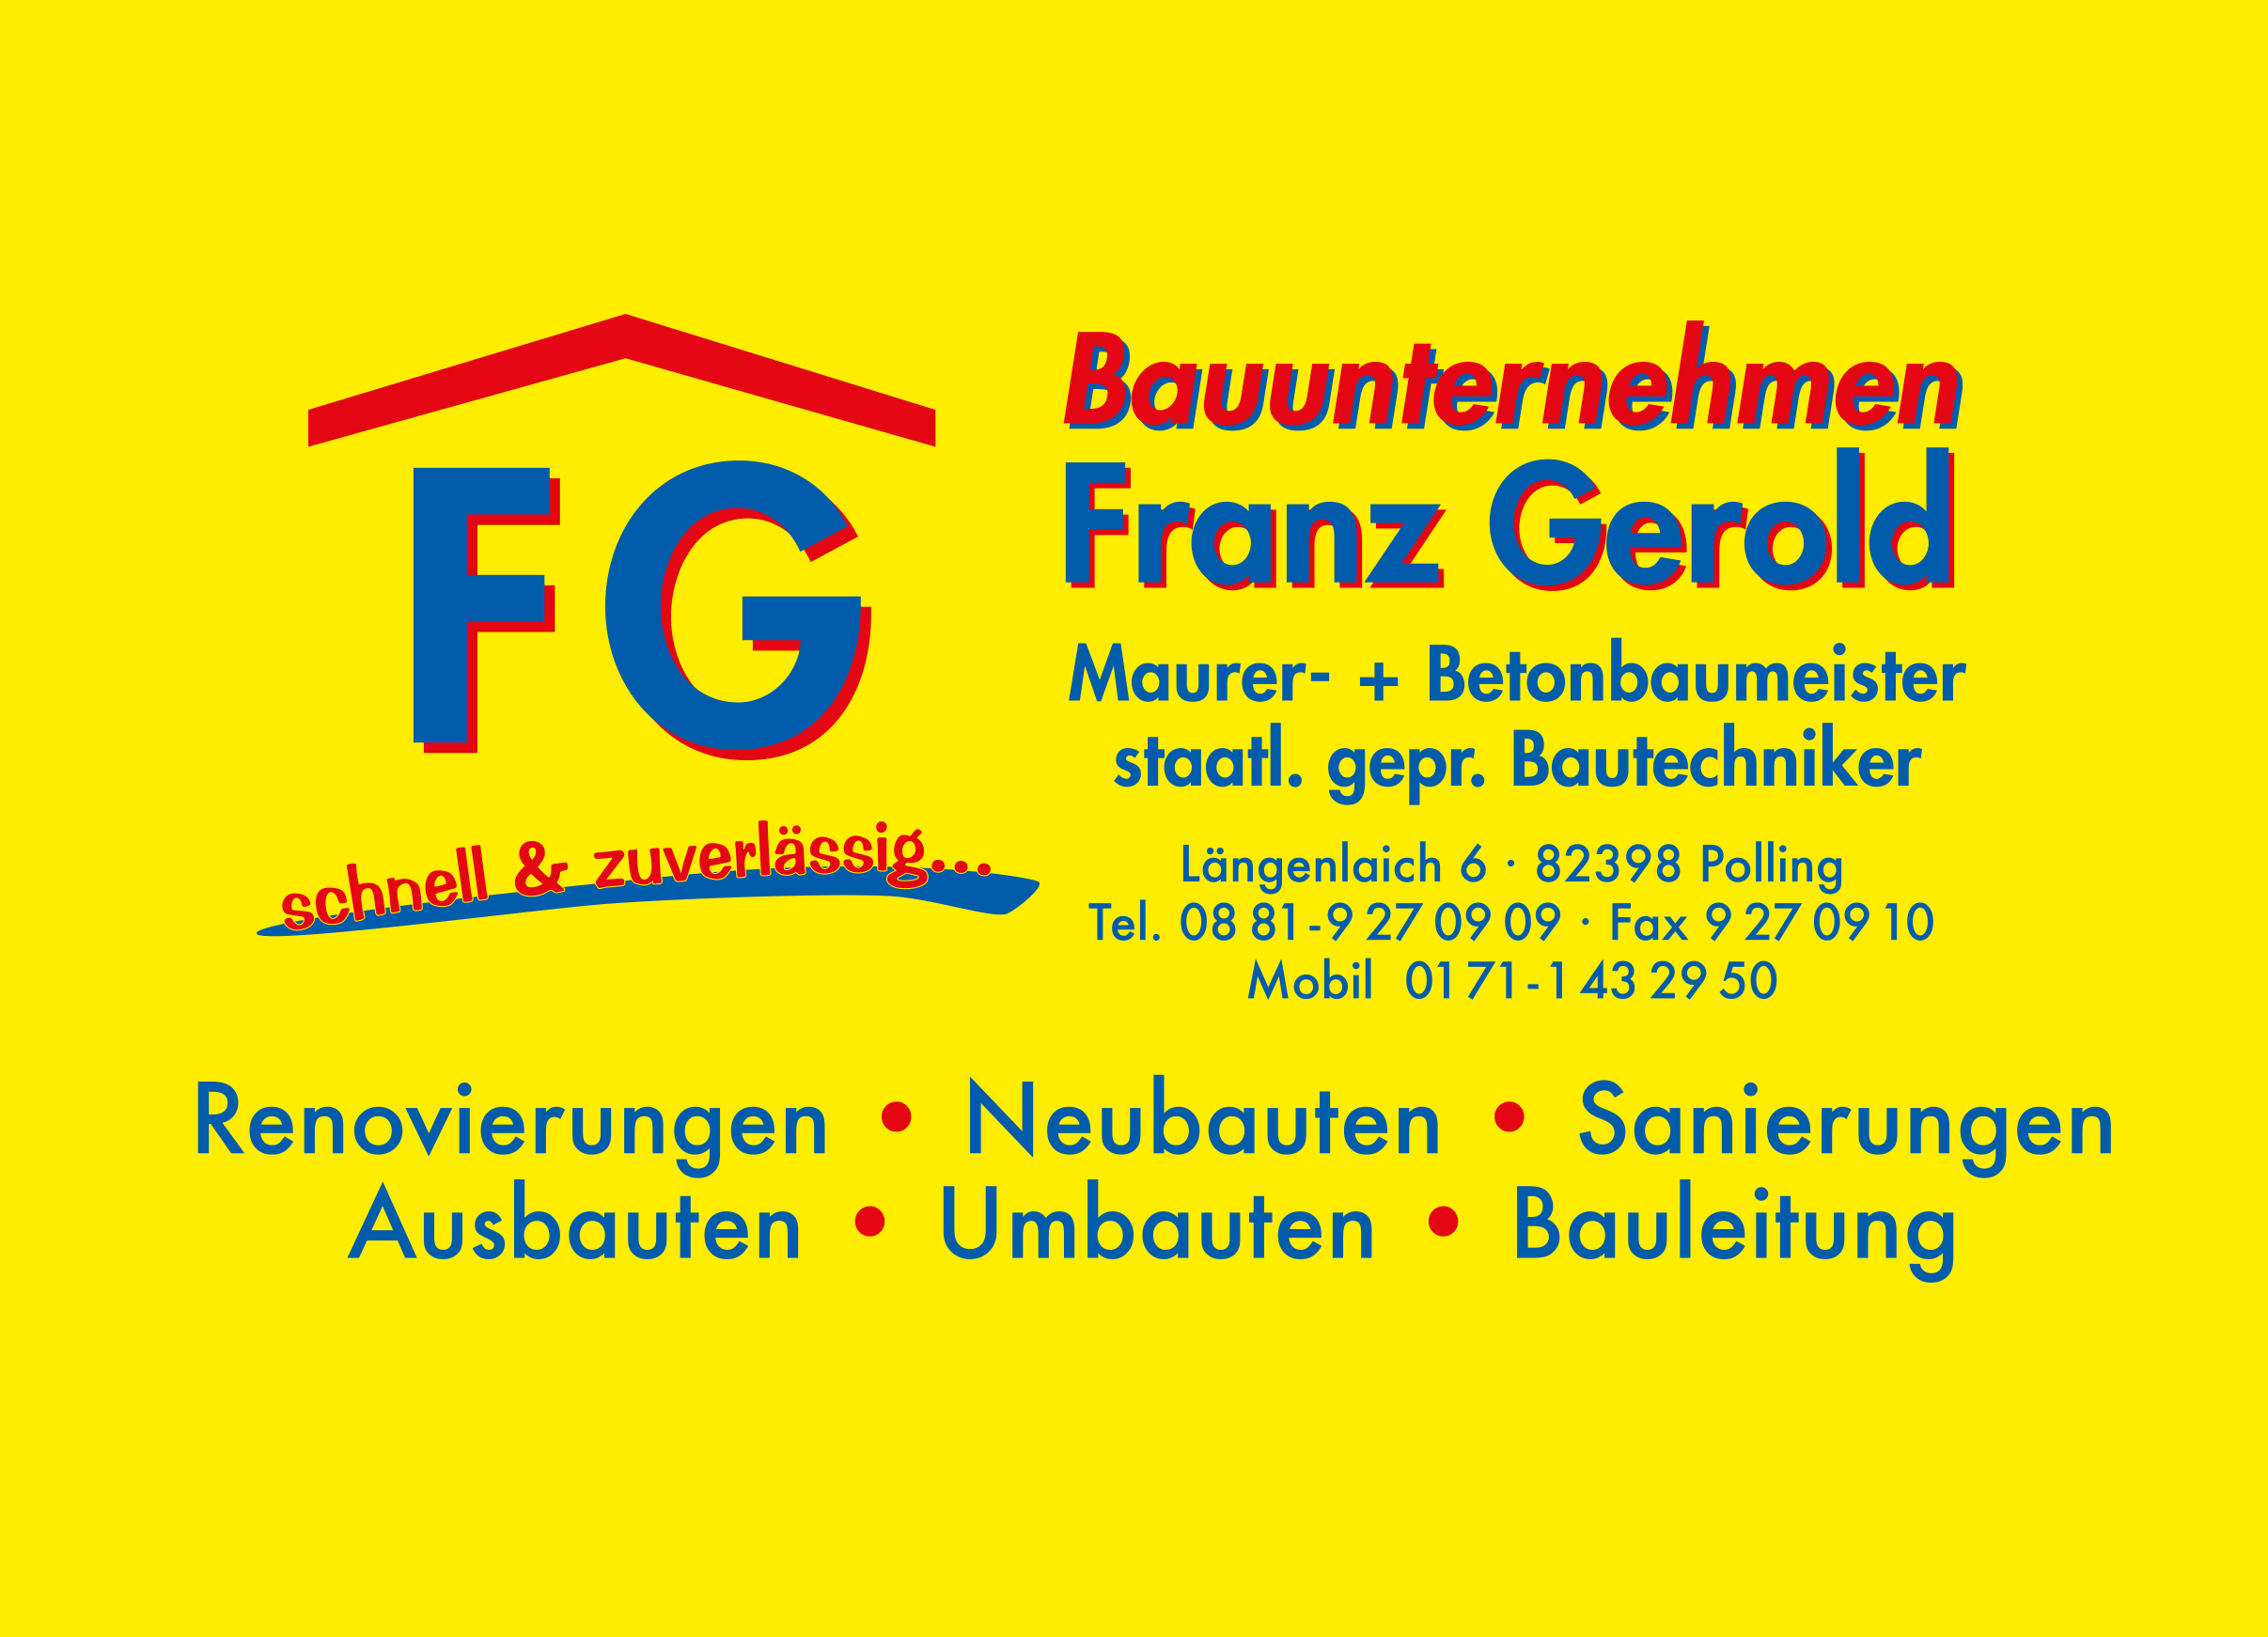 Bauunternehmen Franz Gerold